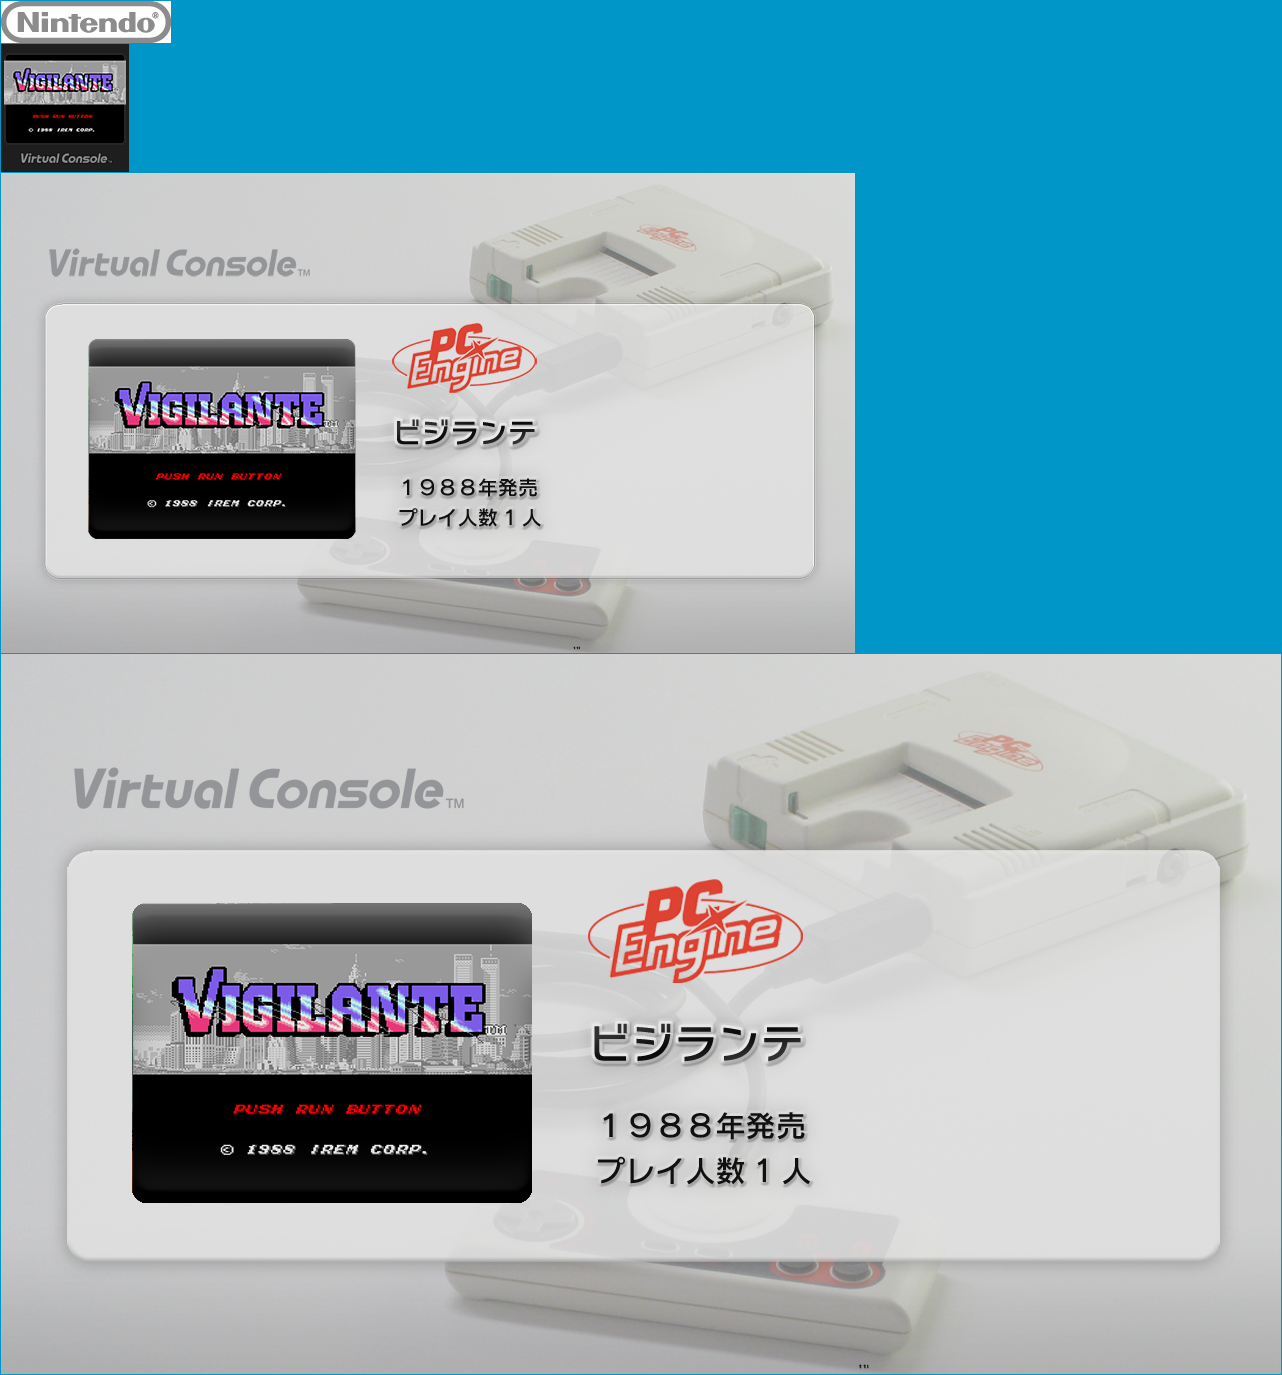 Virtual Console - Vigilante